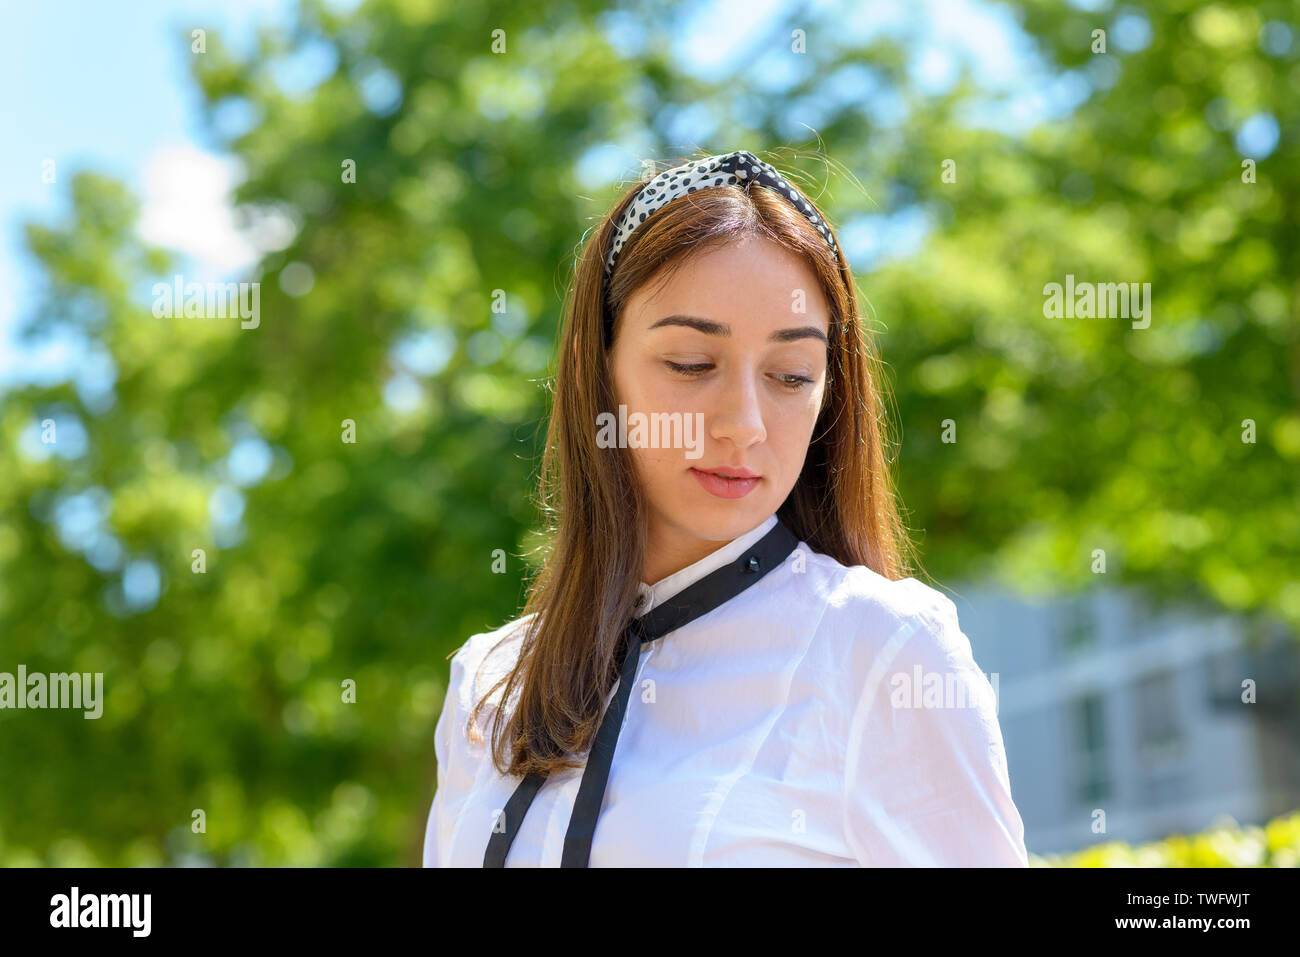 Sorridendo felice giovane donna con capelli lunghi marrone indossando un archetto e guardando verso il basso all'aperto sotto il sole Foto Stock